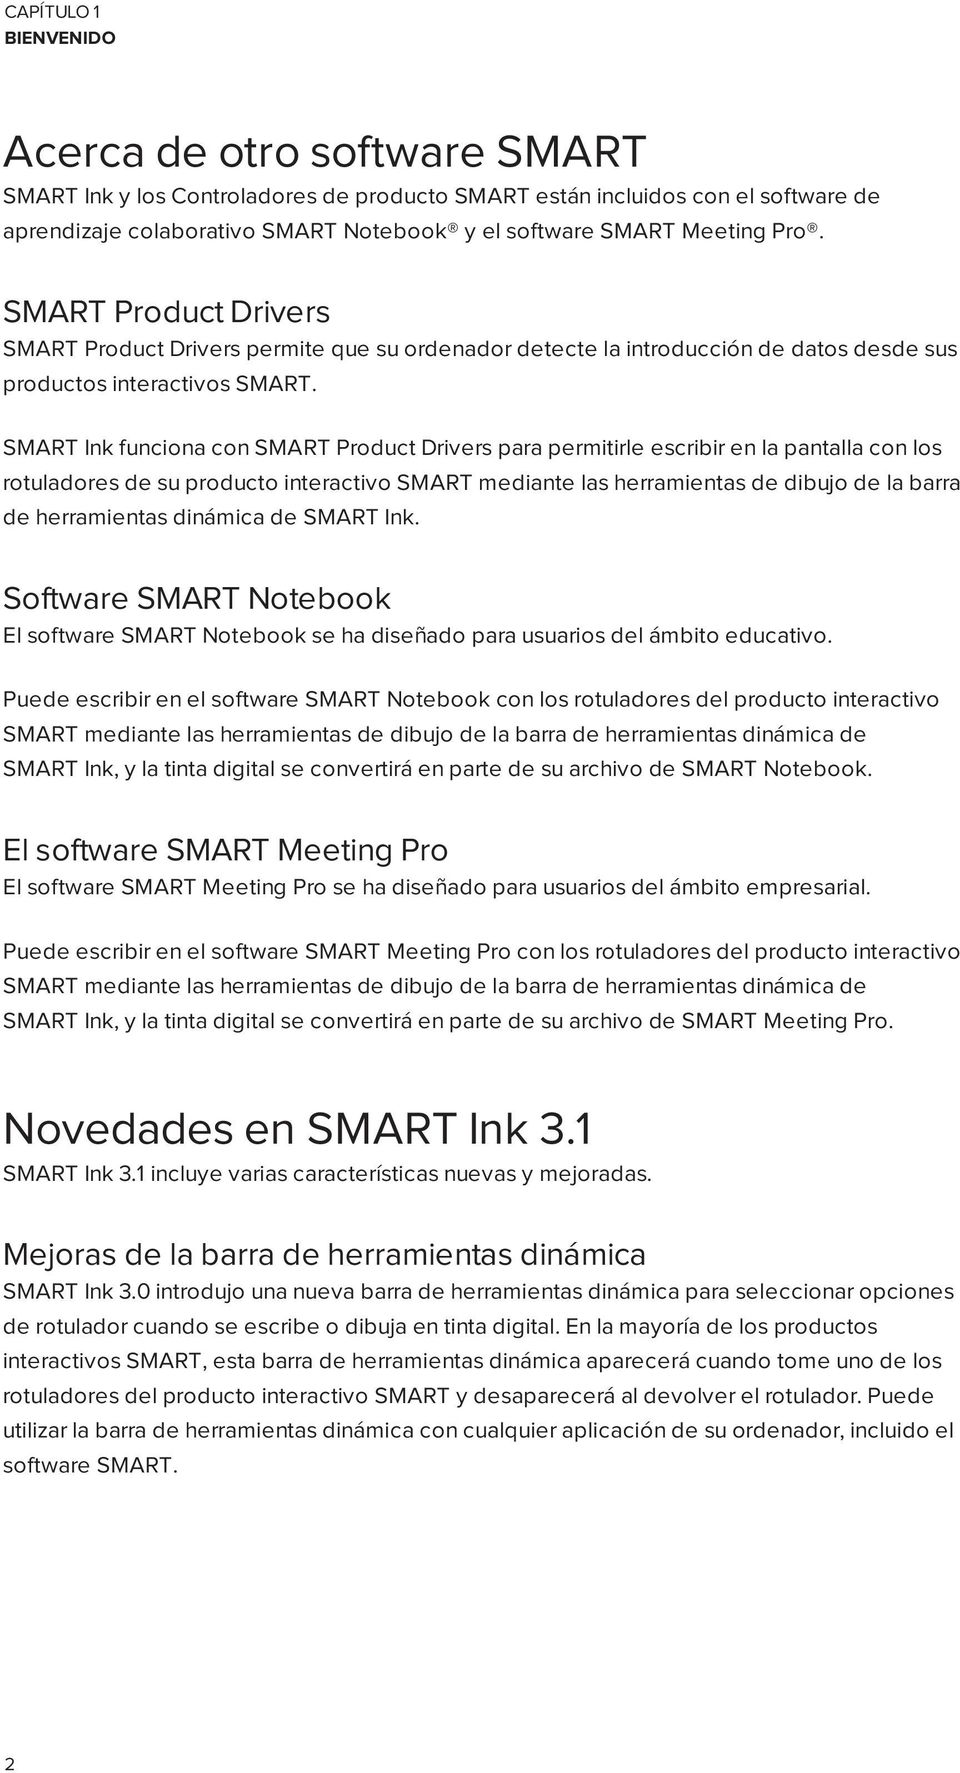 SMART Ink funciona con SMART Product Drivers para permitirle escribir en la pantalla con los rotuladores de su producto interactivo SMART mediante las herramientas de dibujo de la barra de